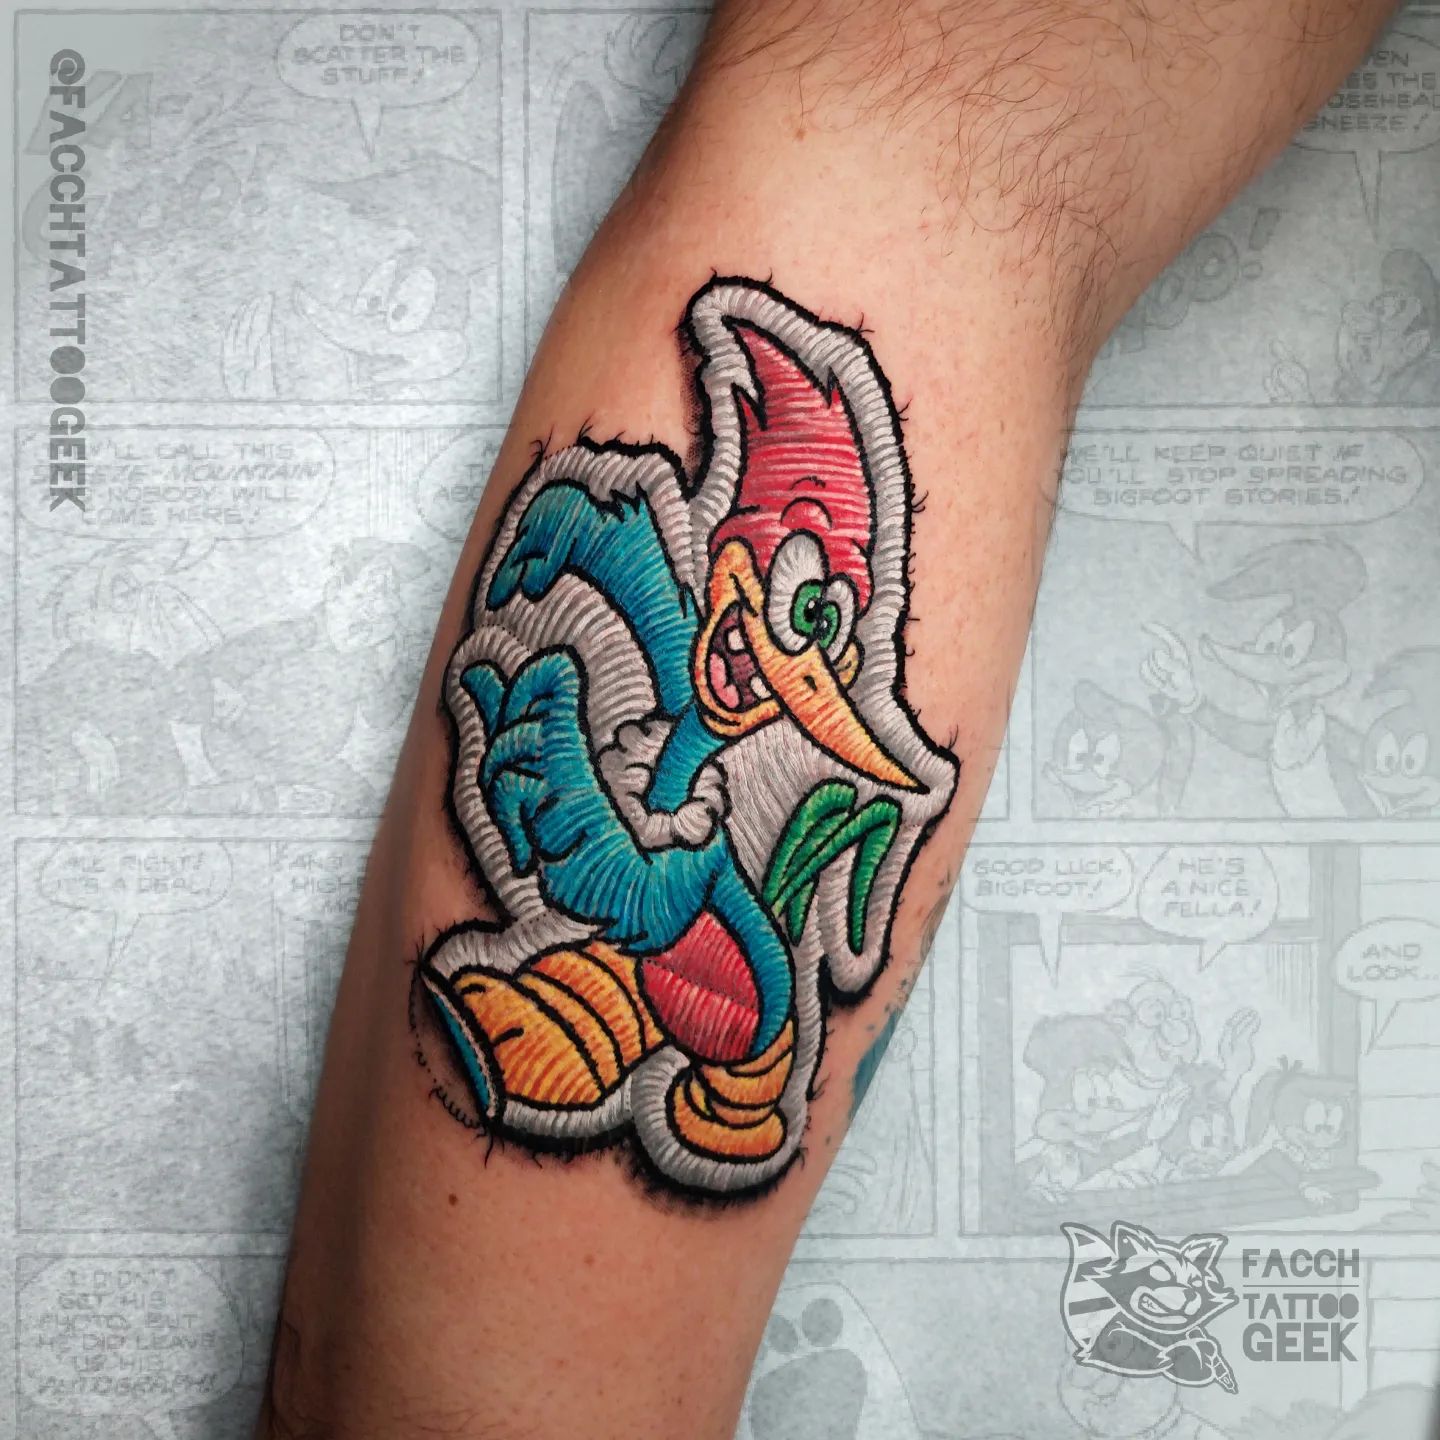 Tattoo artist facchtattoogeek | São Paulo, Brazil | iNKPPL